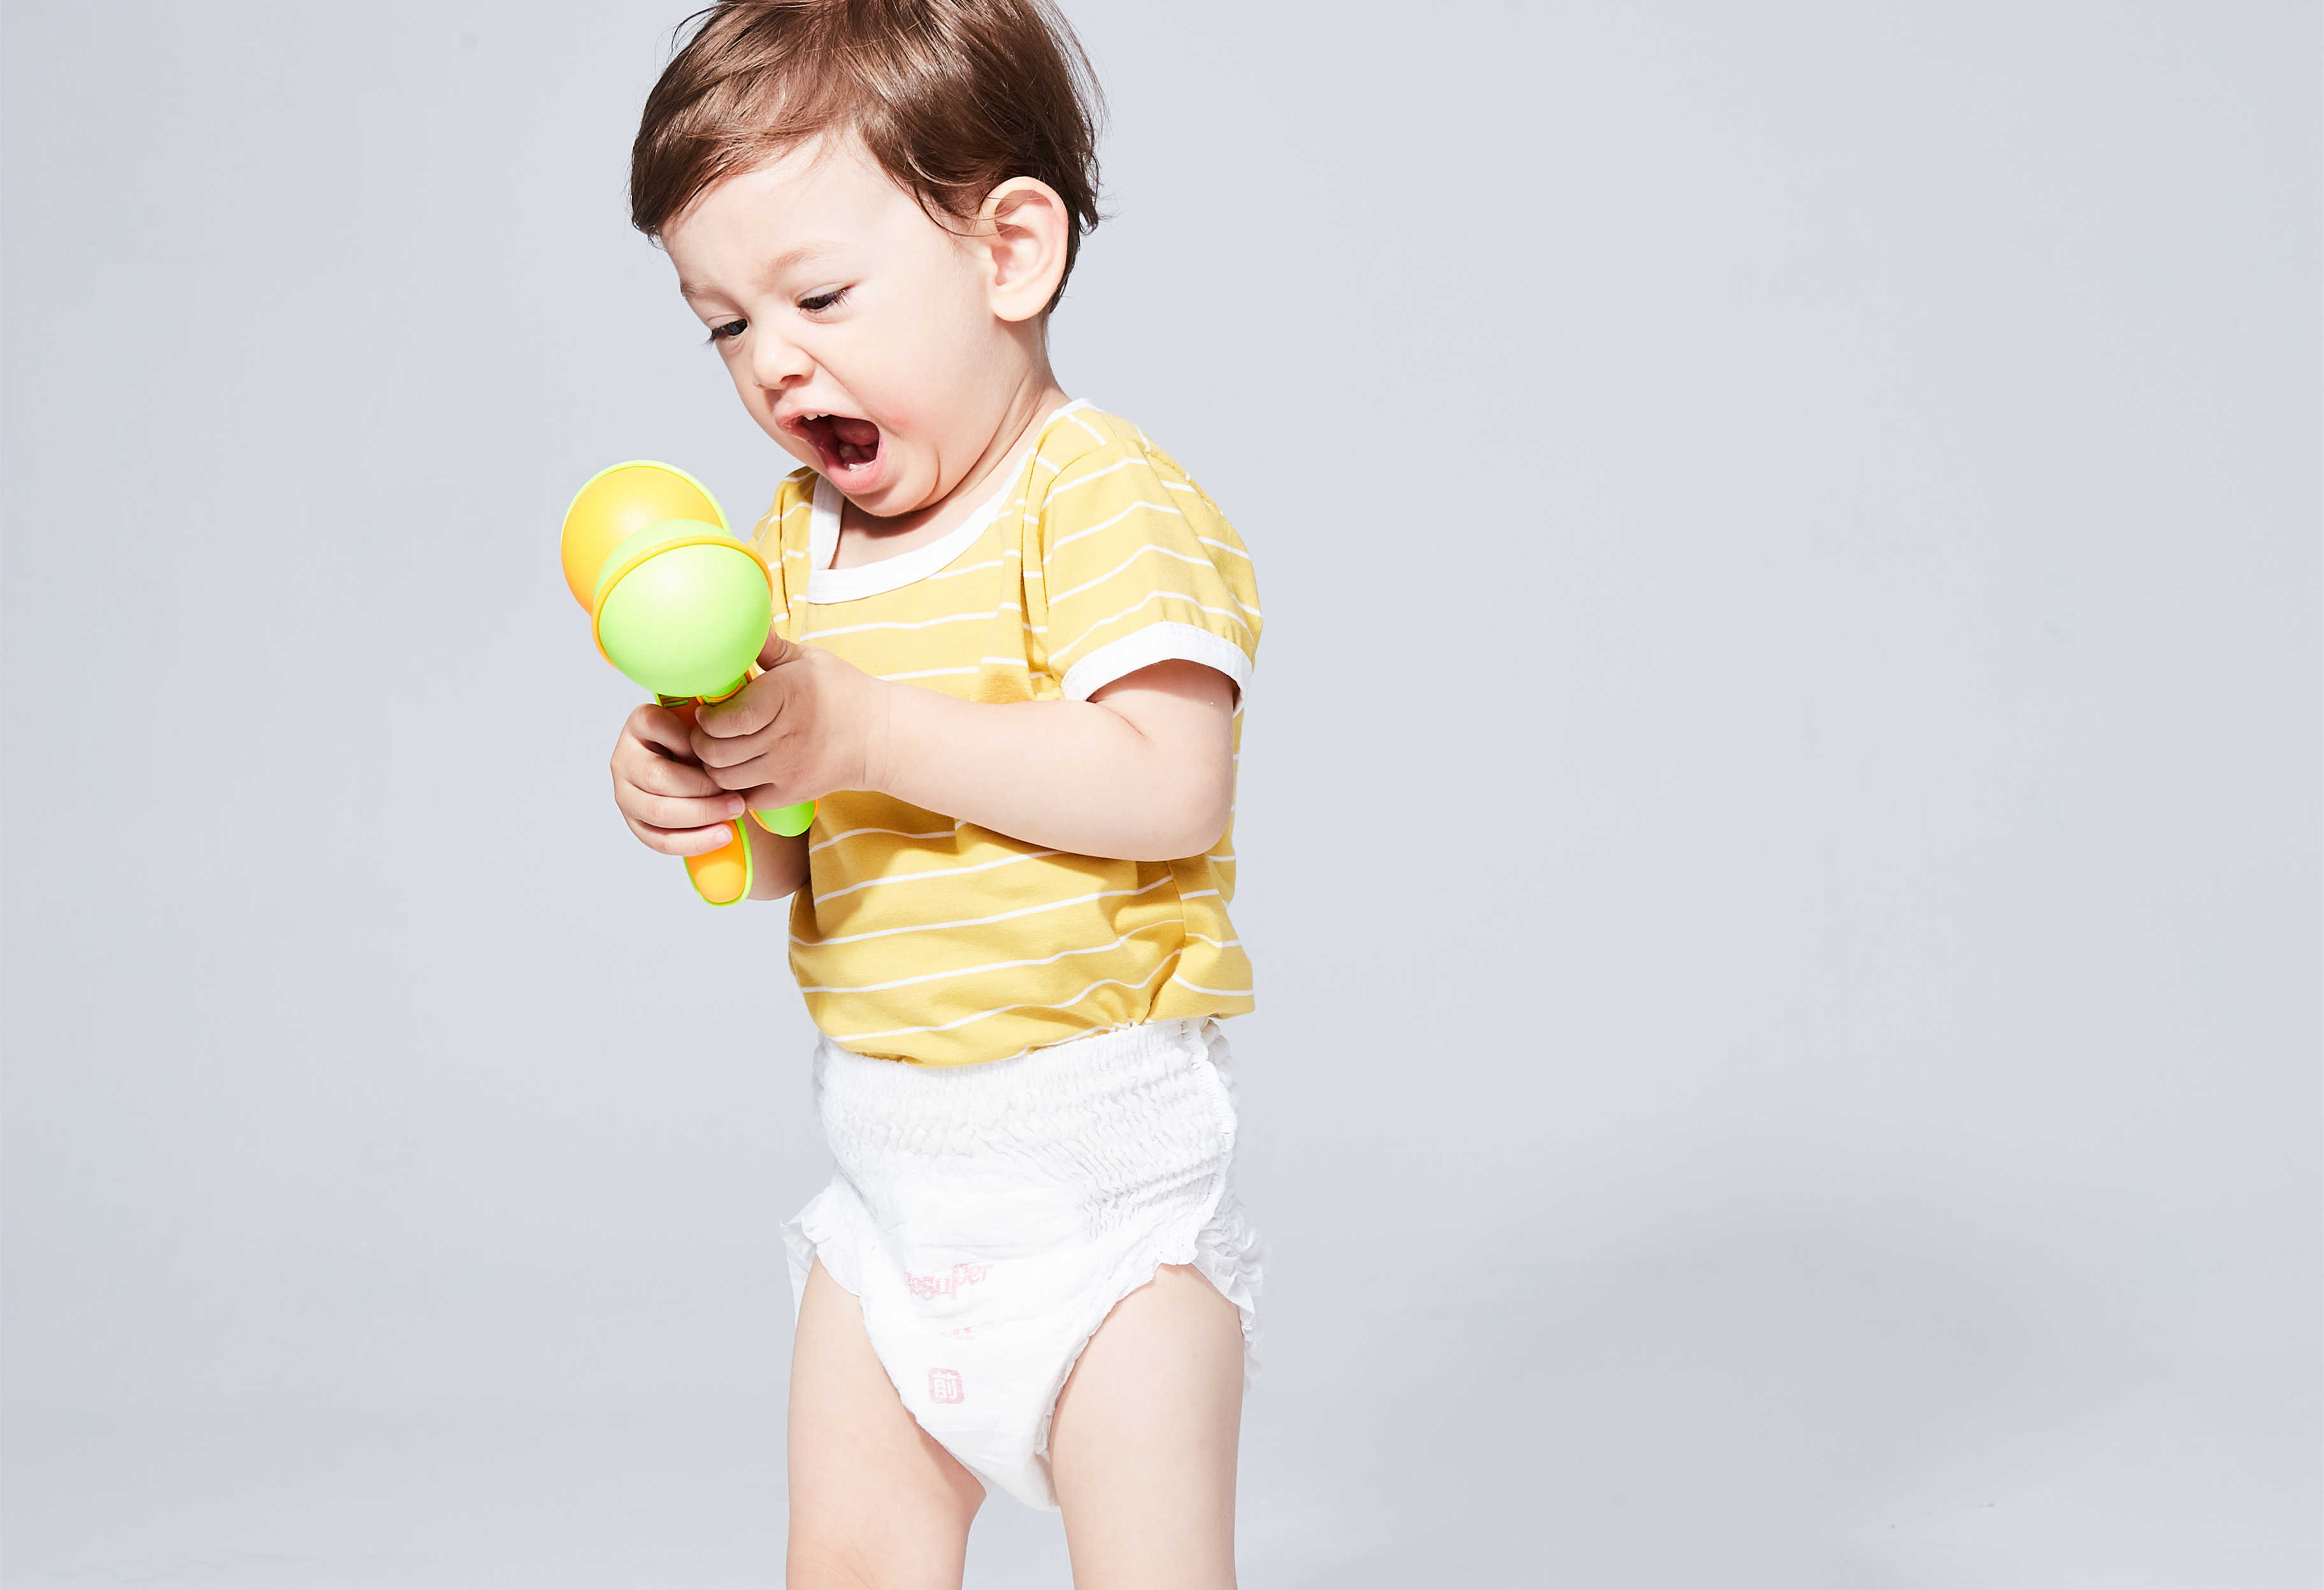 Baby Diaper vs Baby Pants: In wiidweidige gids